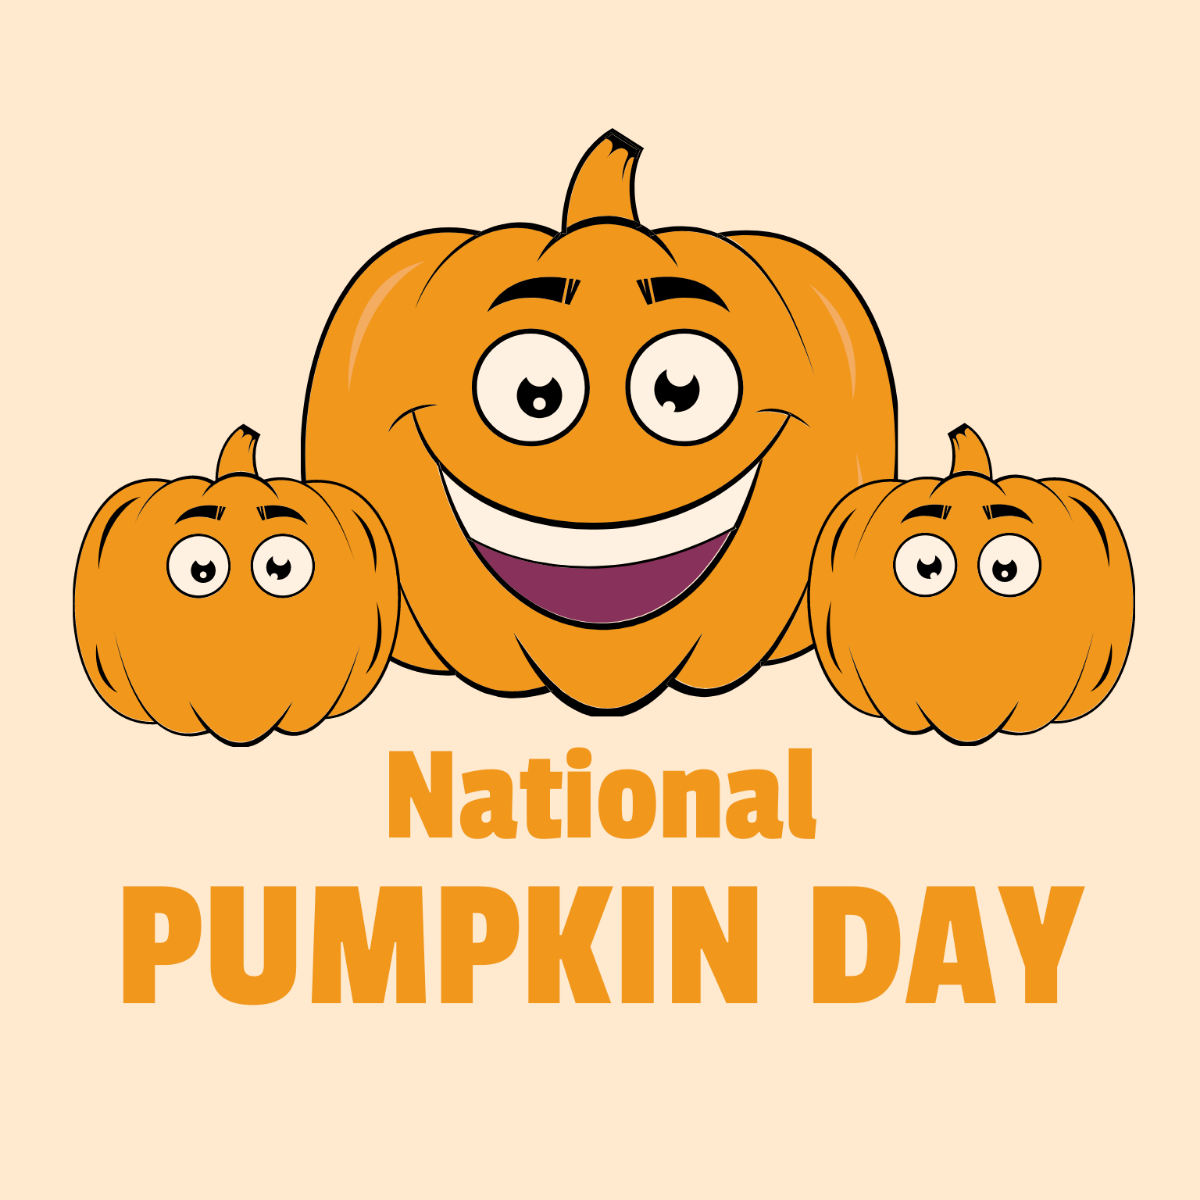 National Pumpkin Day Cartoon Vector